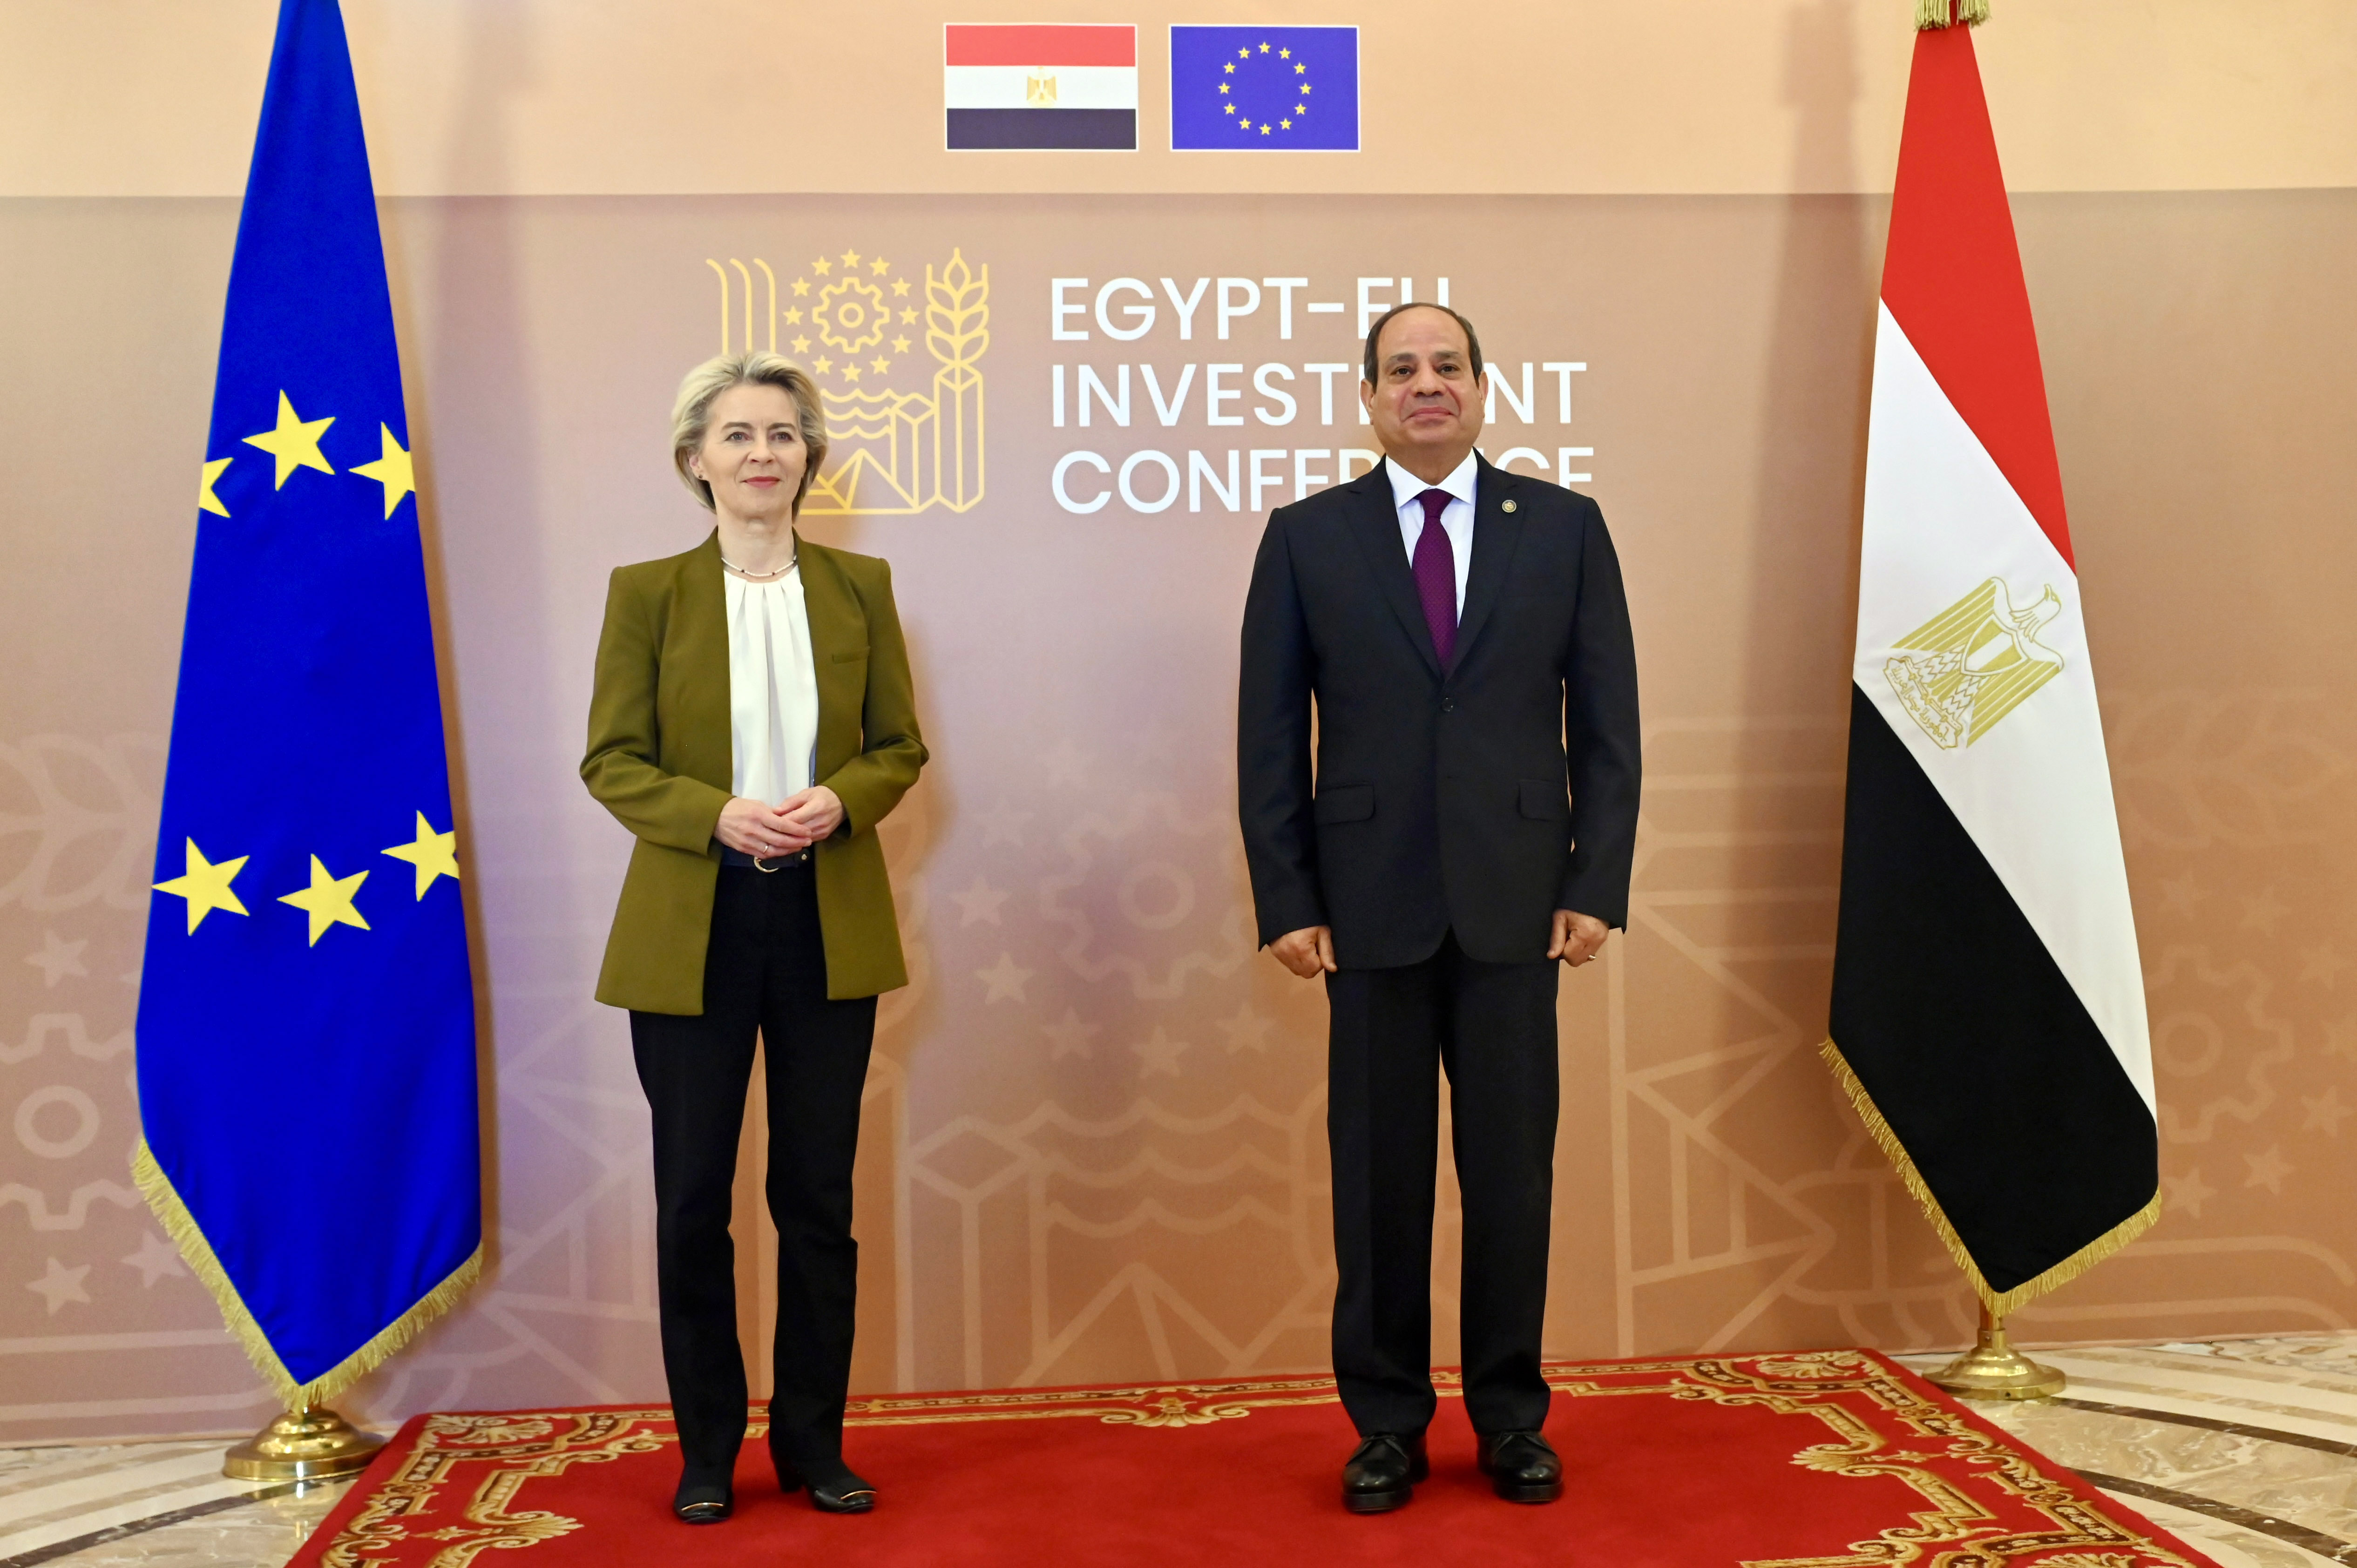 President von der Leyen and President El-Sisi